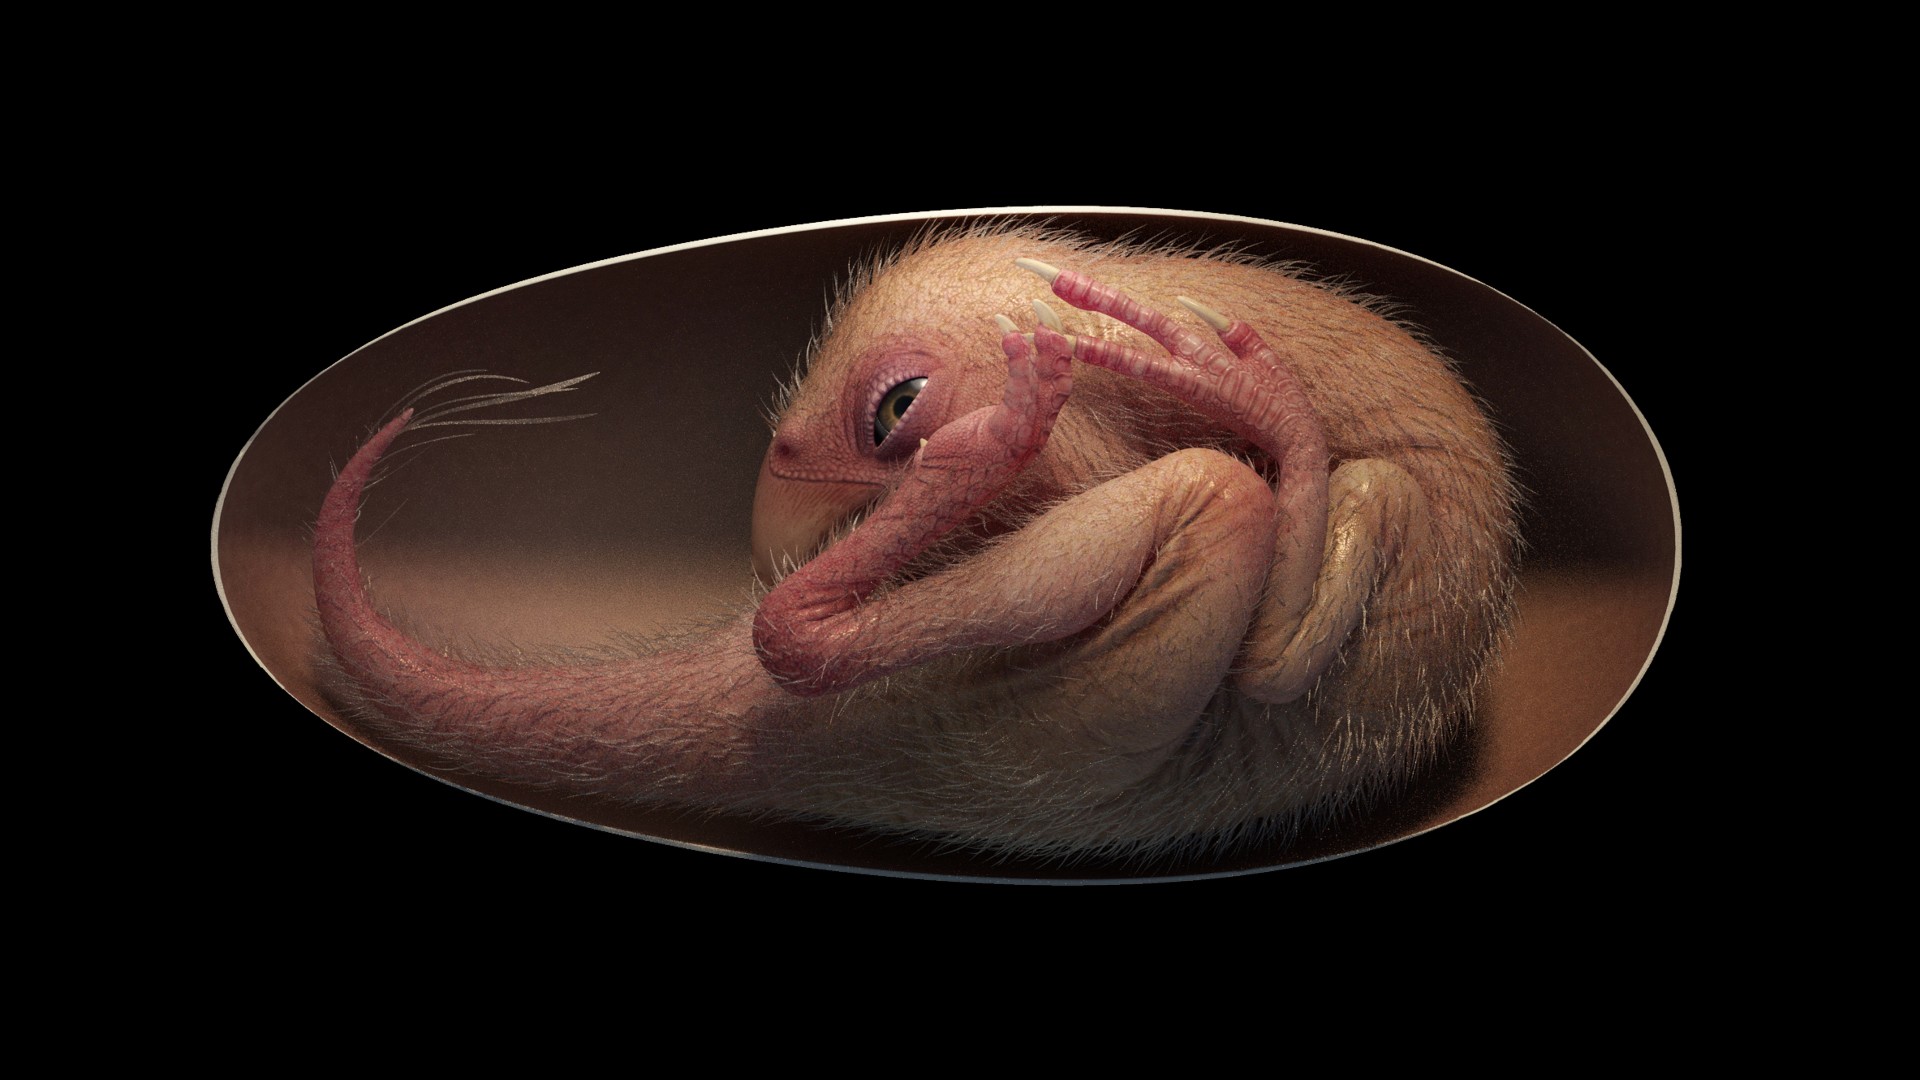 Реконструкция динозавра в яйце по имени Малыш Инлян. Предоставлено: Shoulin Animation.